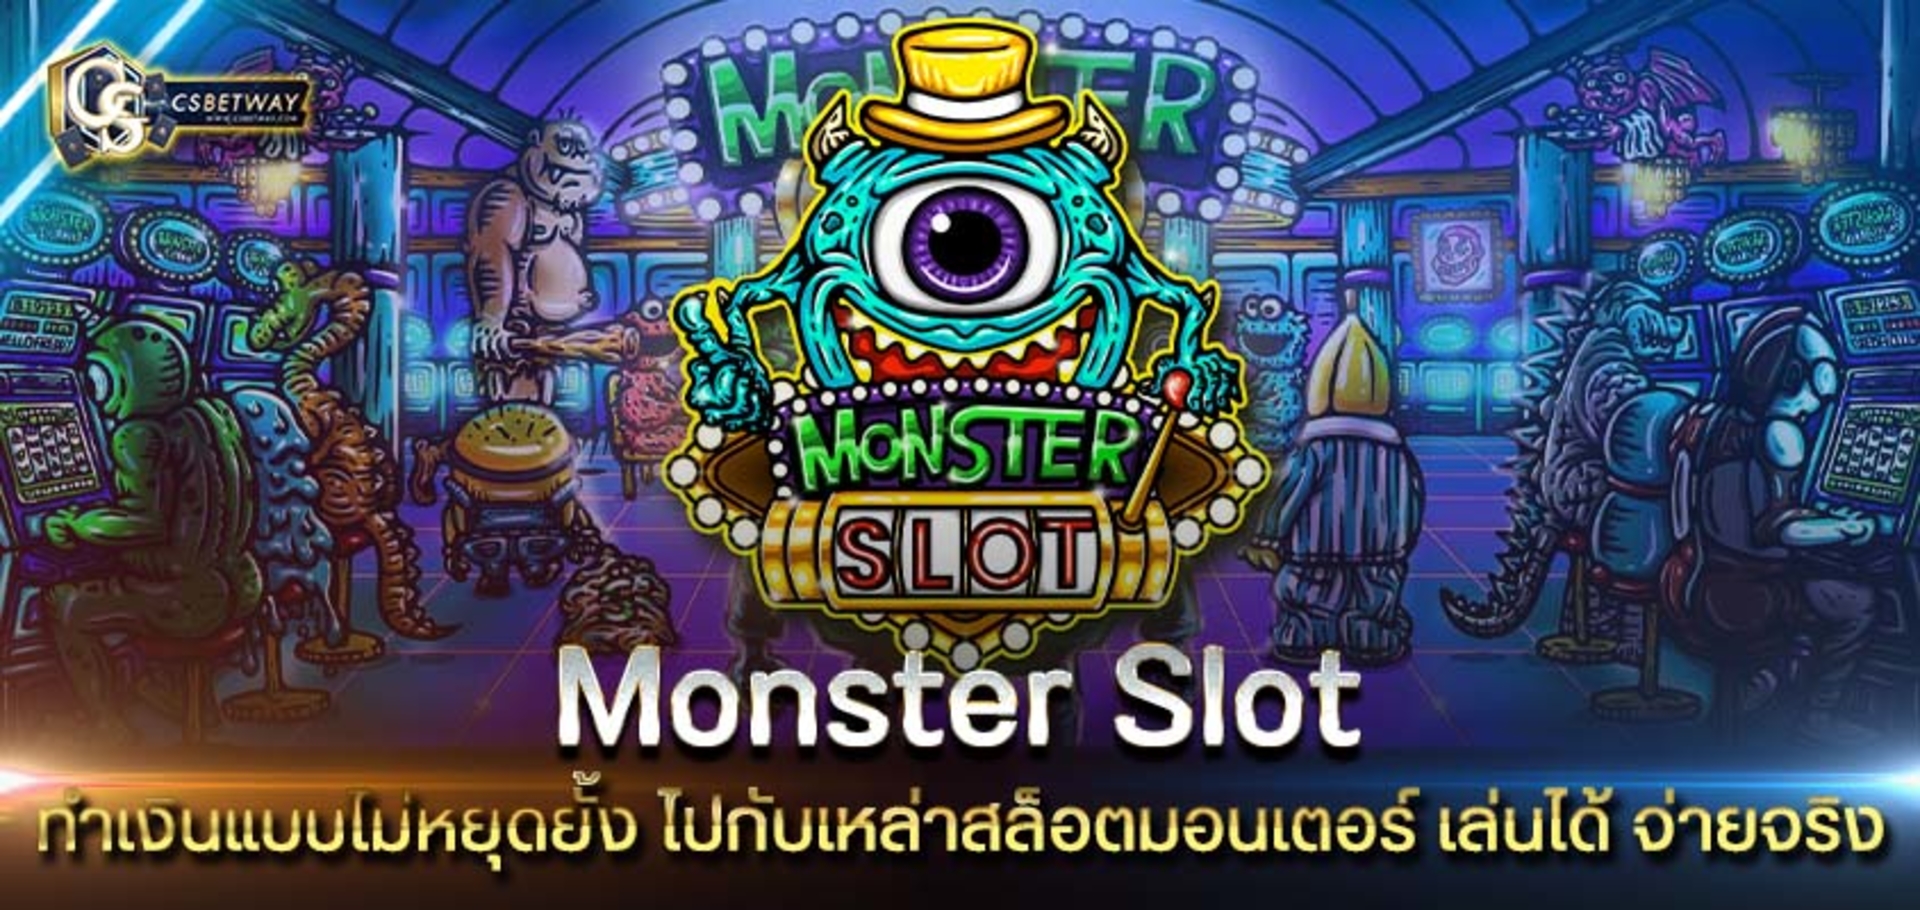 monster slot ทำเงินแบบไม่หยุดยั้ง ไปกับเหล่าสล็อตมอนเตอร์ เล่นได้ จ่ายจริง